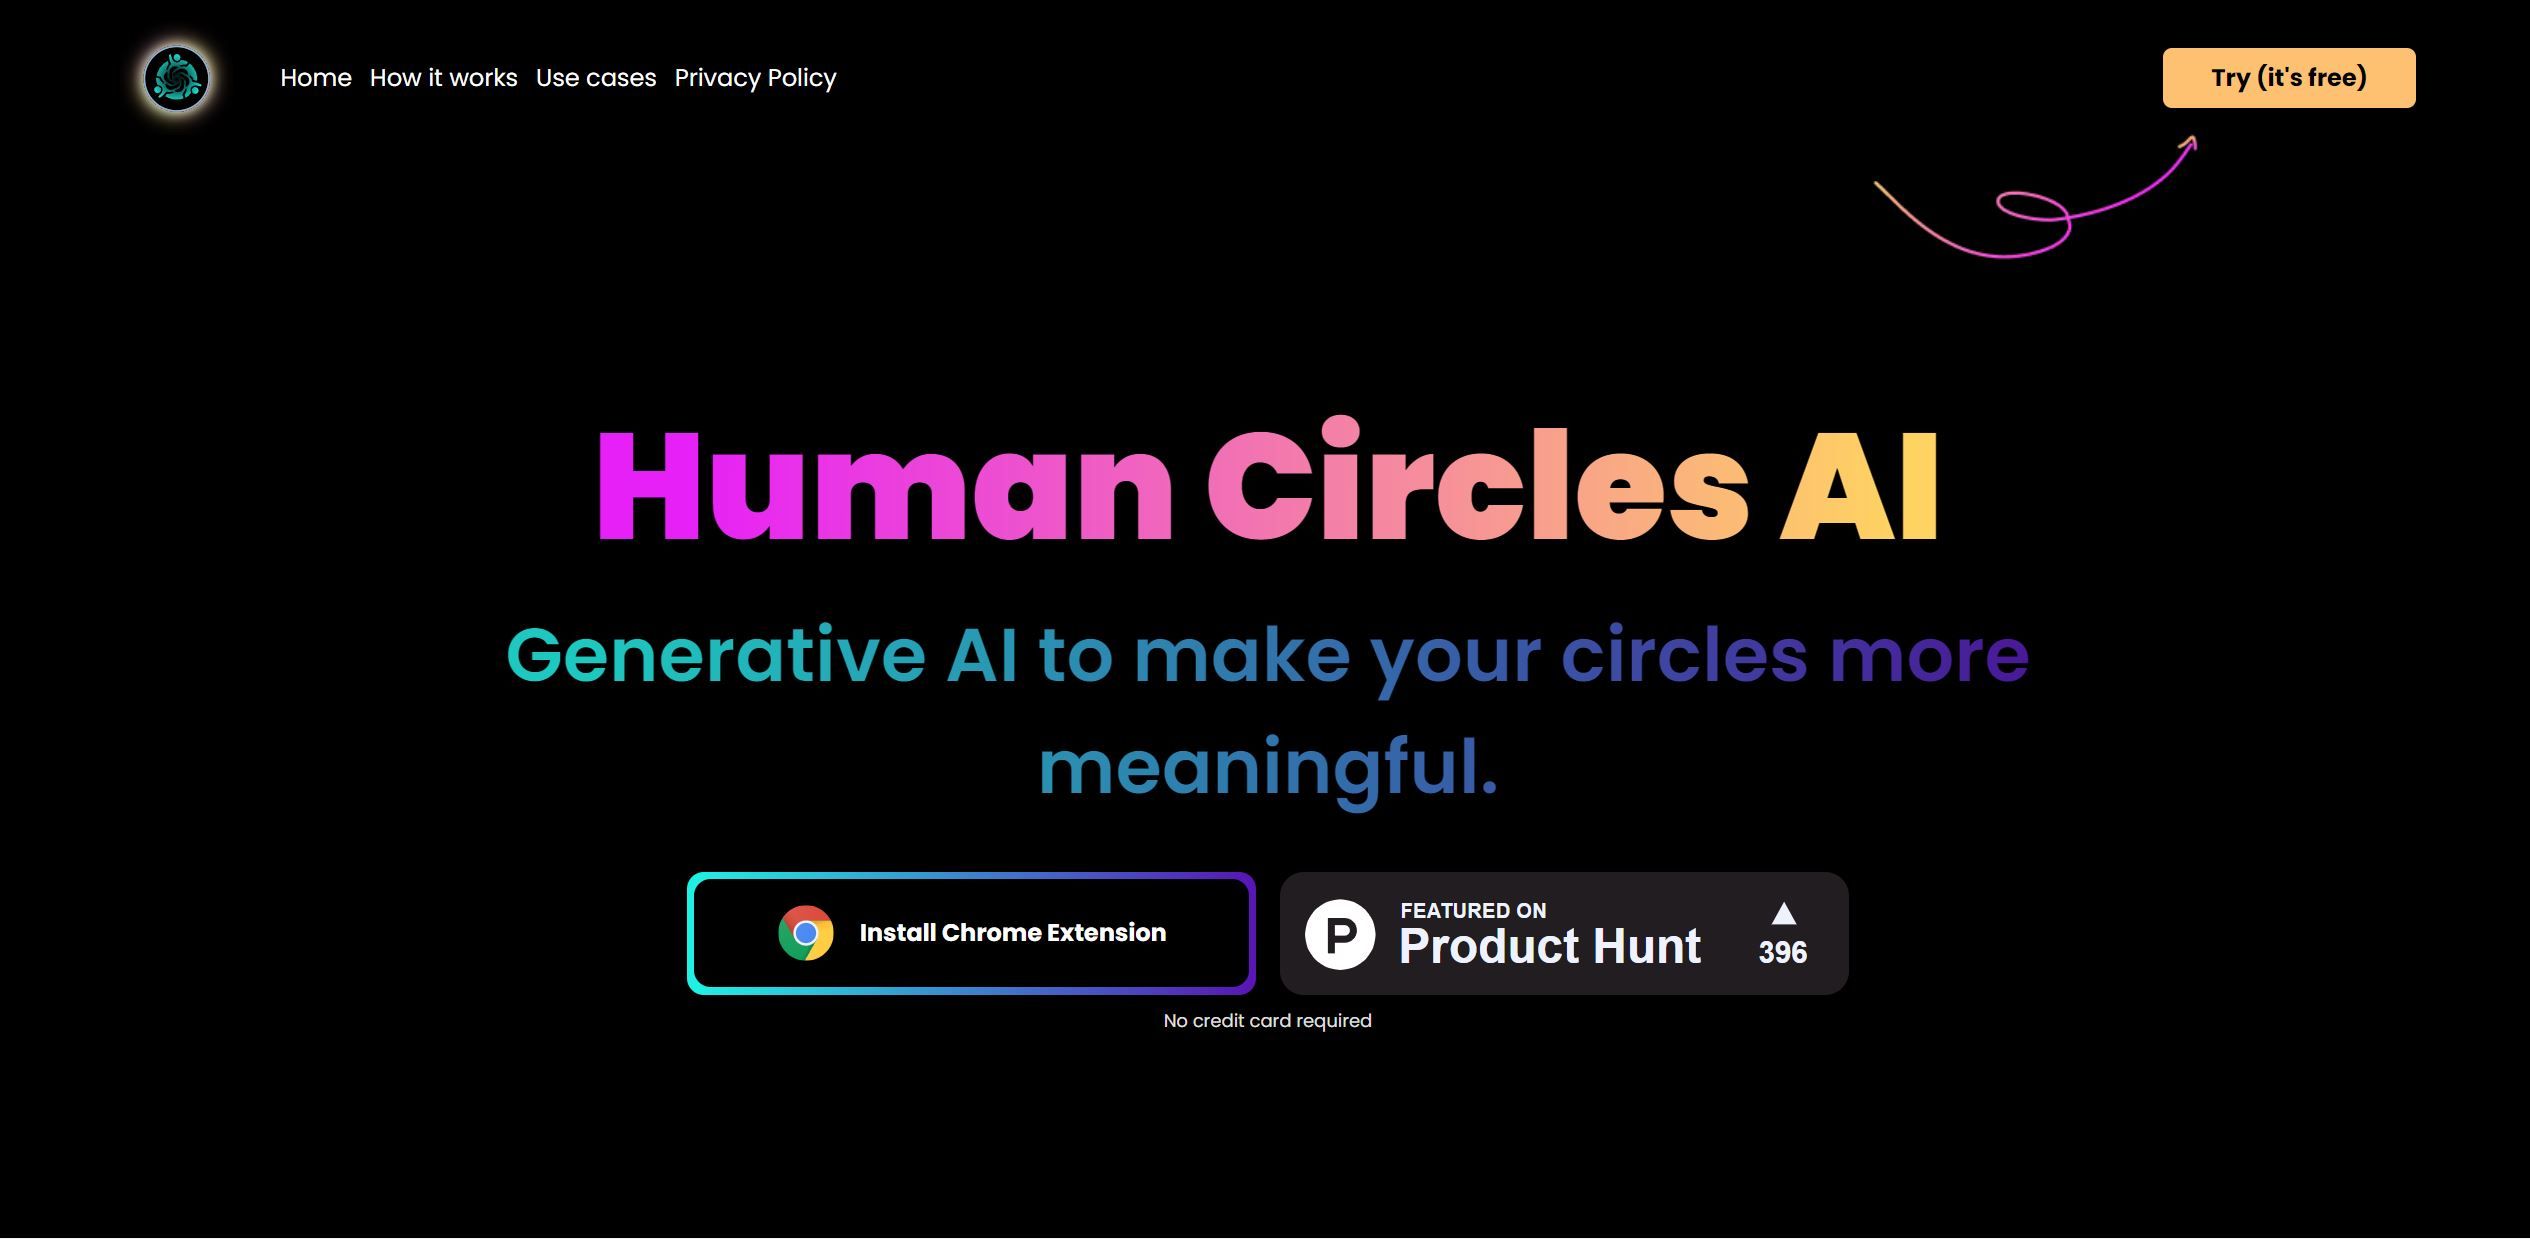 Human Circles AI